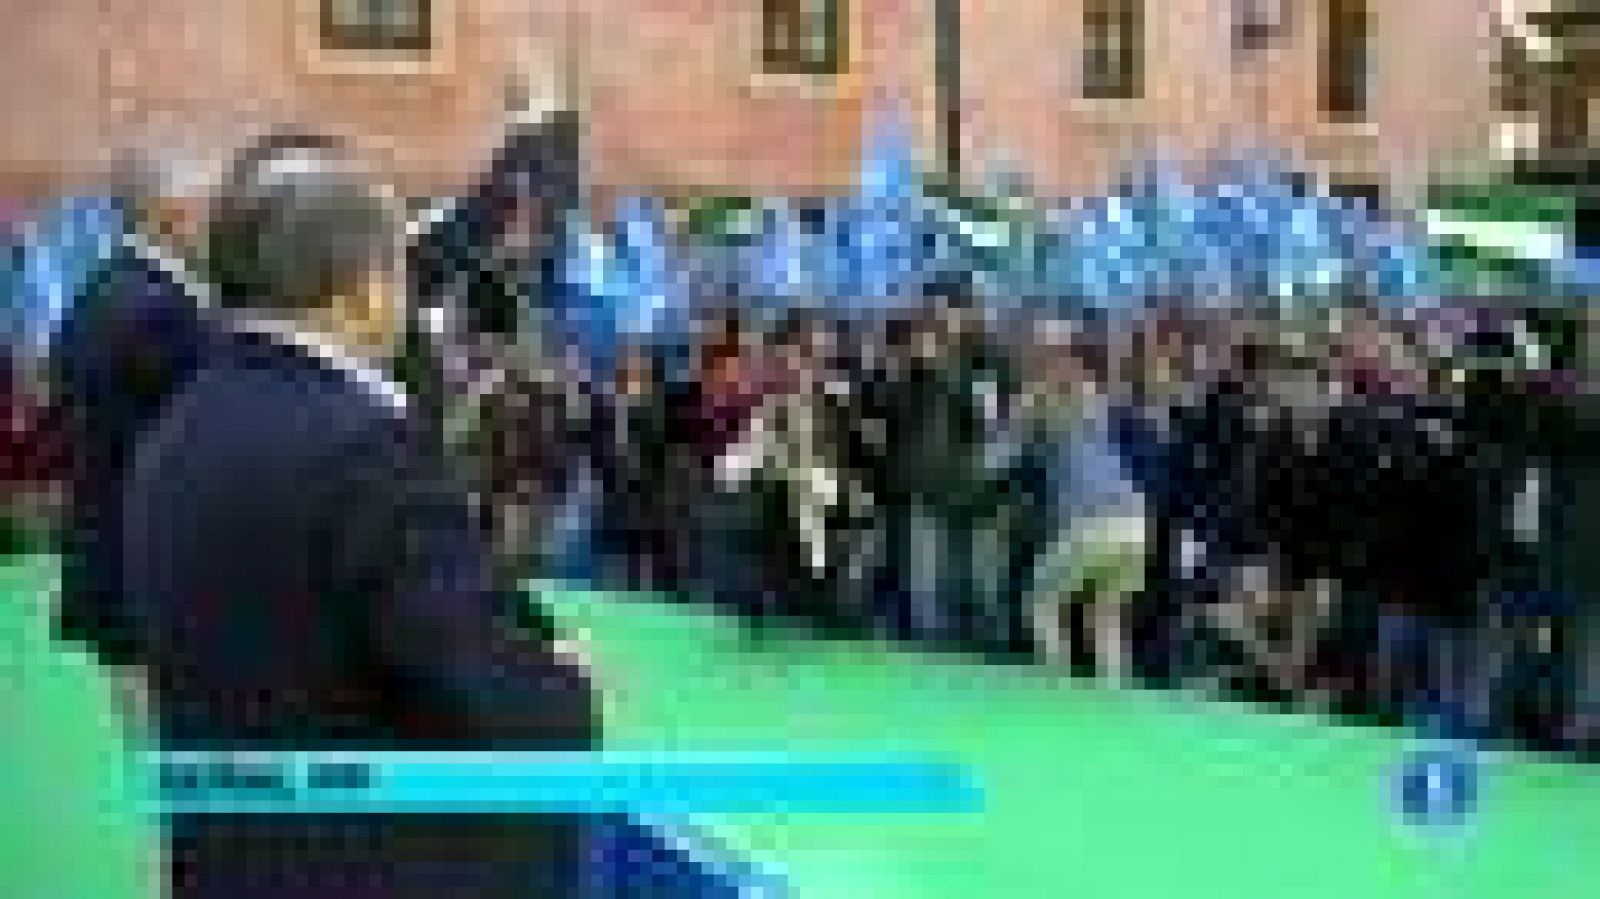 La secretaria general del PP y presidenta de Castilla-La Mancha, María Dolores de Cospedal, se ha dirigido este sábado al PSOE y a aquellos "que convocan manifestaciones y huelgas" para preguntarles "cuándo van a pensar en los que no tienen un puesto de trabajo" y van a dejar a un lado "los intereses partidistas".

Durante la clausura de un mitin en Granada junto al candidato del partido para las elecciones andaluzas del 25 de marzo, Javier Arenas, Cospedal ha asegurado que el PP es el verdadero "partido de los trabajadores", ya que es la formación que al llegar al poder "crea empleo".

La dirigente popular ha asegurado que la reforma laboral impulsada por el Gobierno de Mariano Rajoy, que ha provocado la convocatoria de una huelga general para el 29 de marzo, persigue en realidad que los 5,3 millones de parados que hay en España "tengan un trabajo"